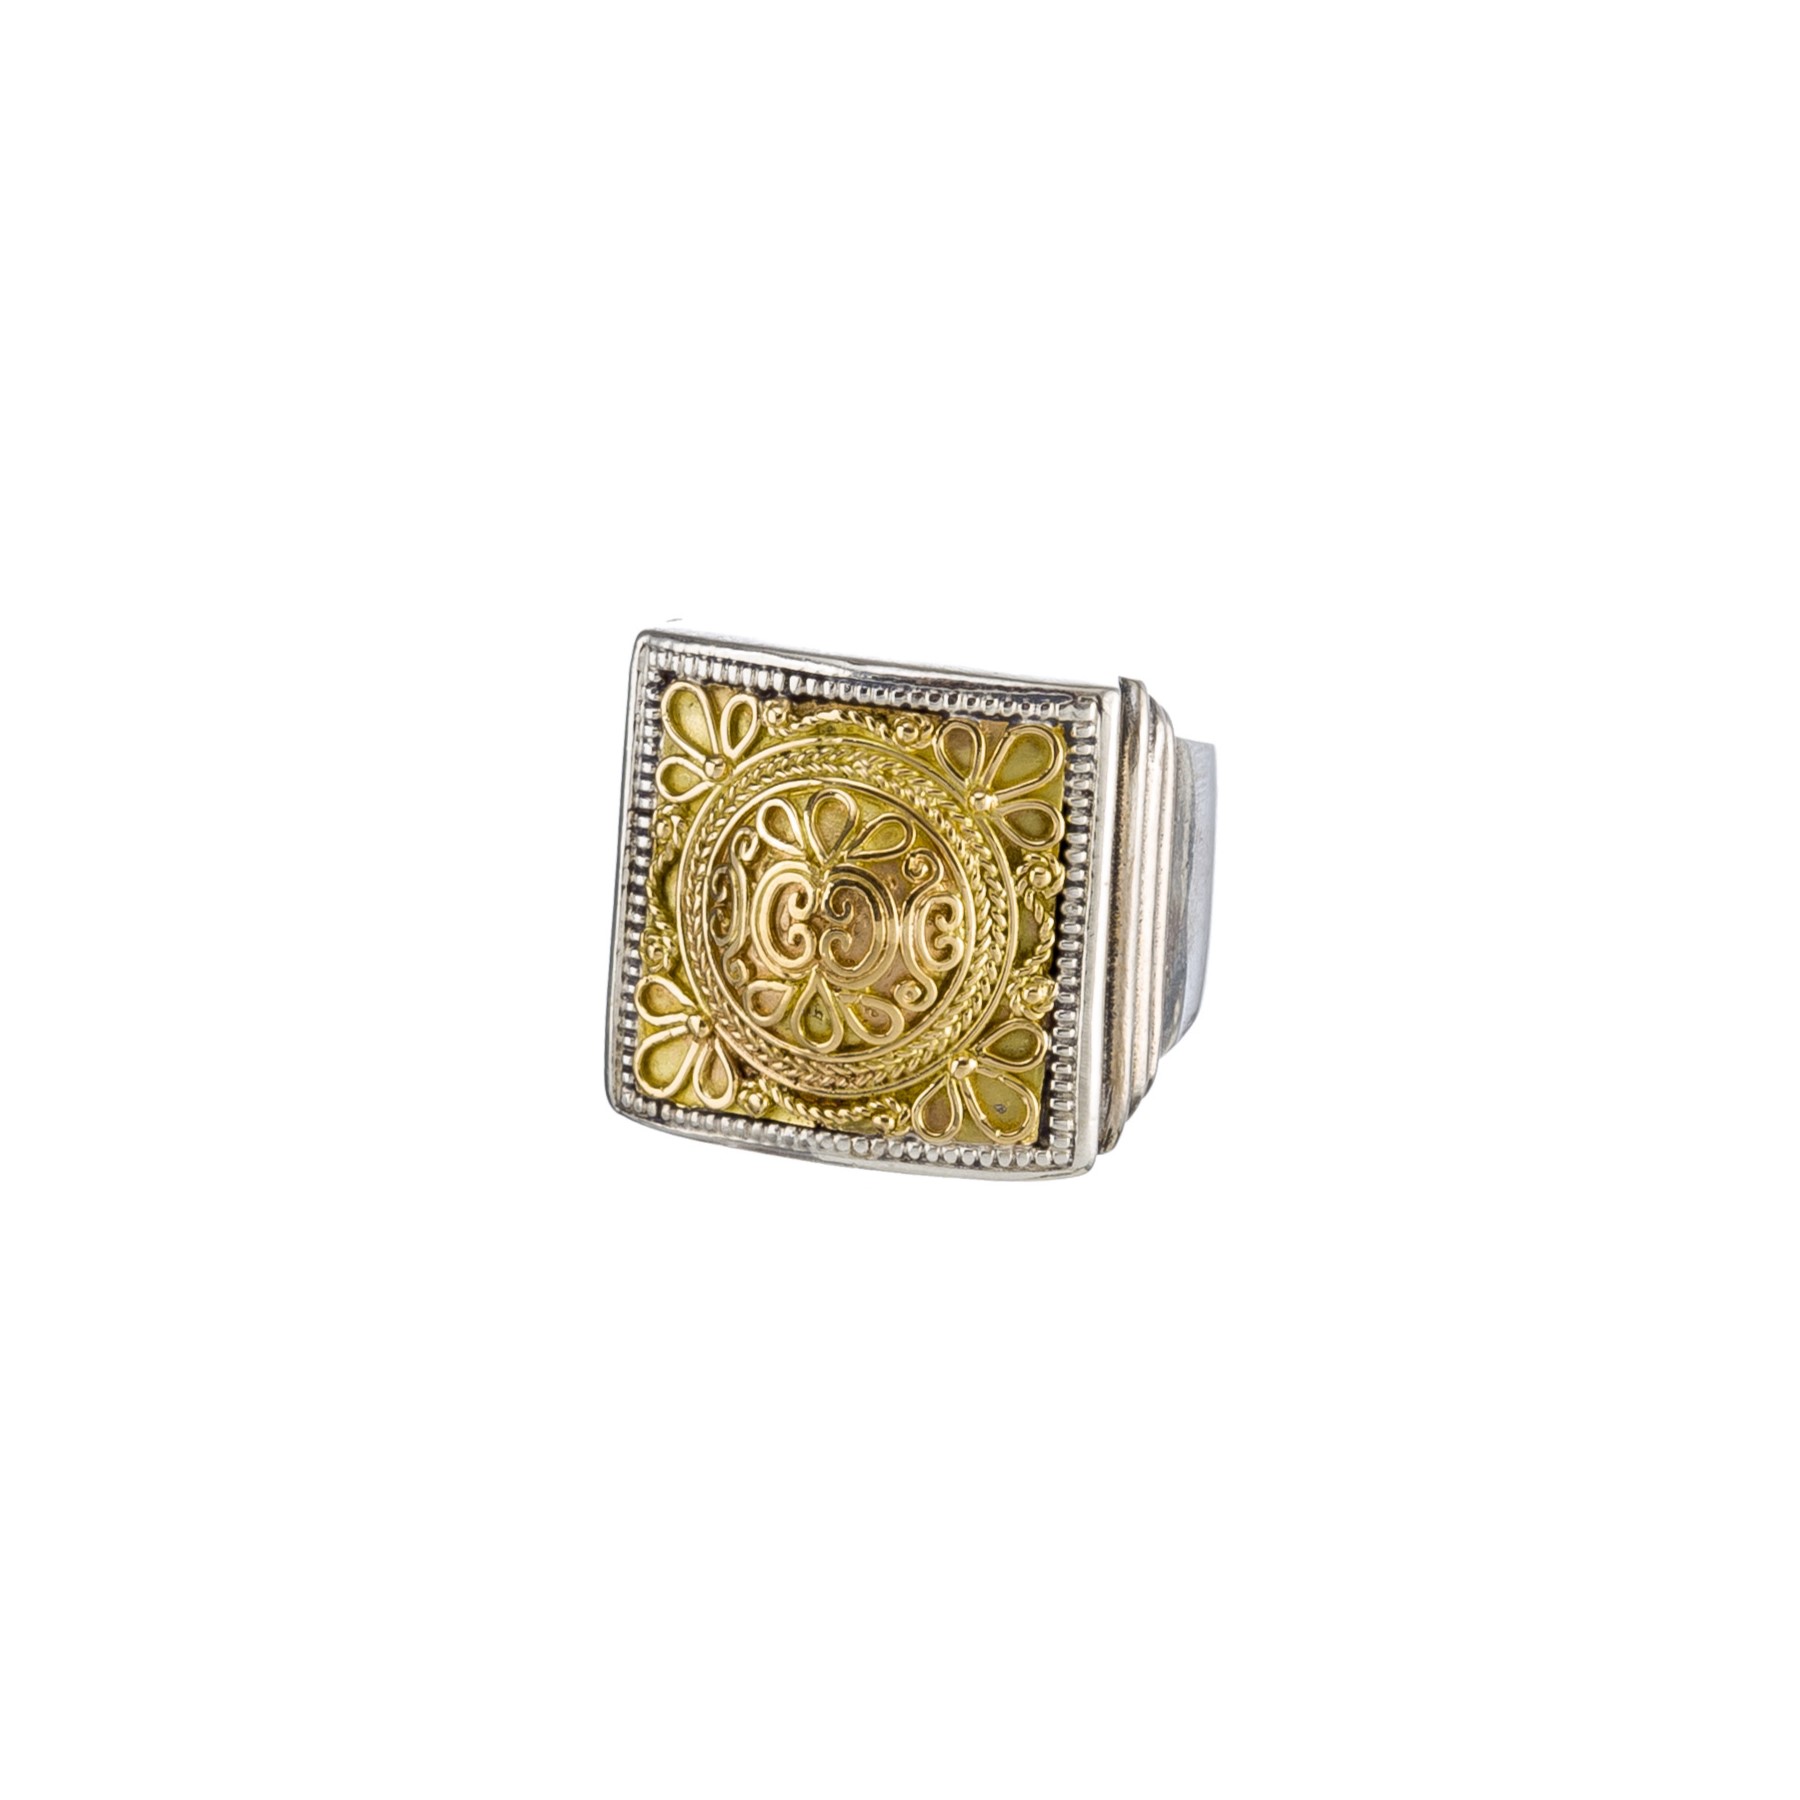 Monastiraki square ring in 18K Gold and Sterling Silver